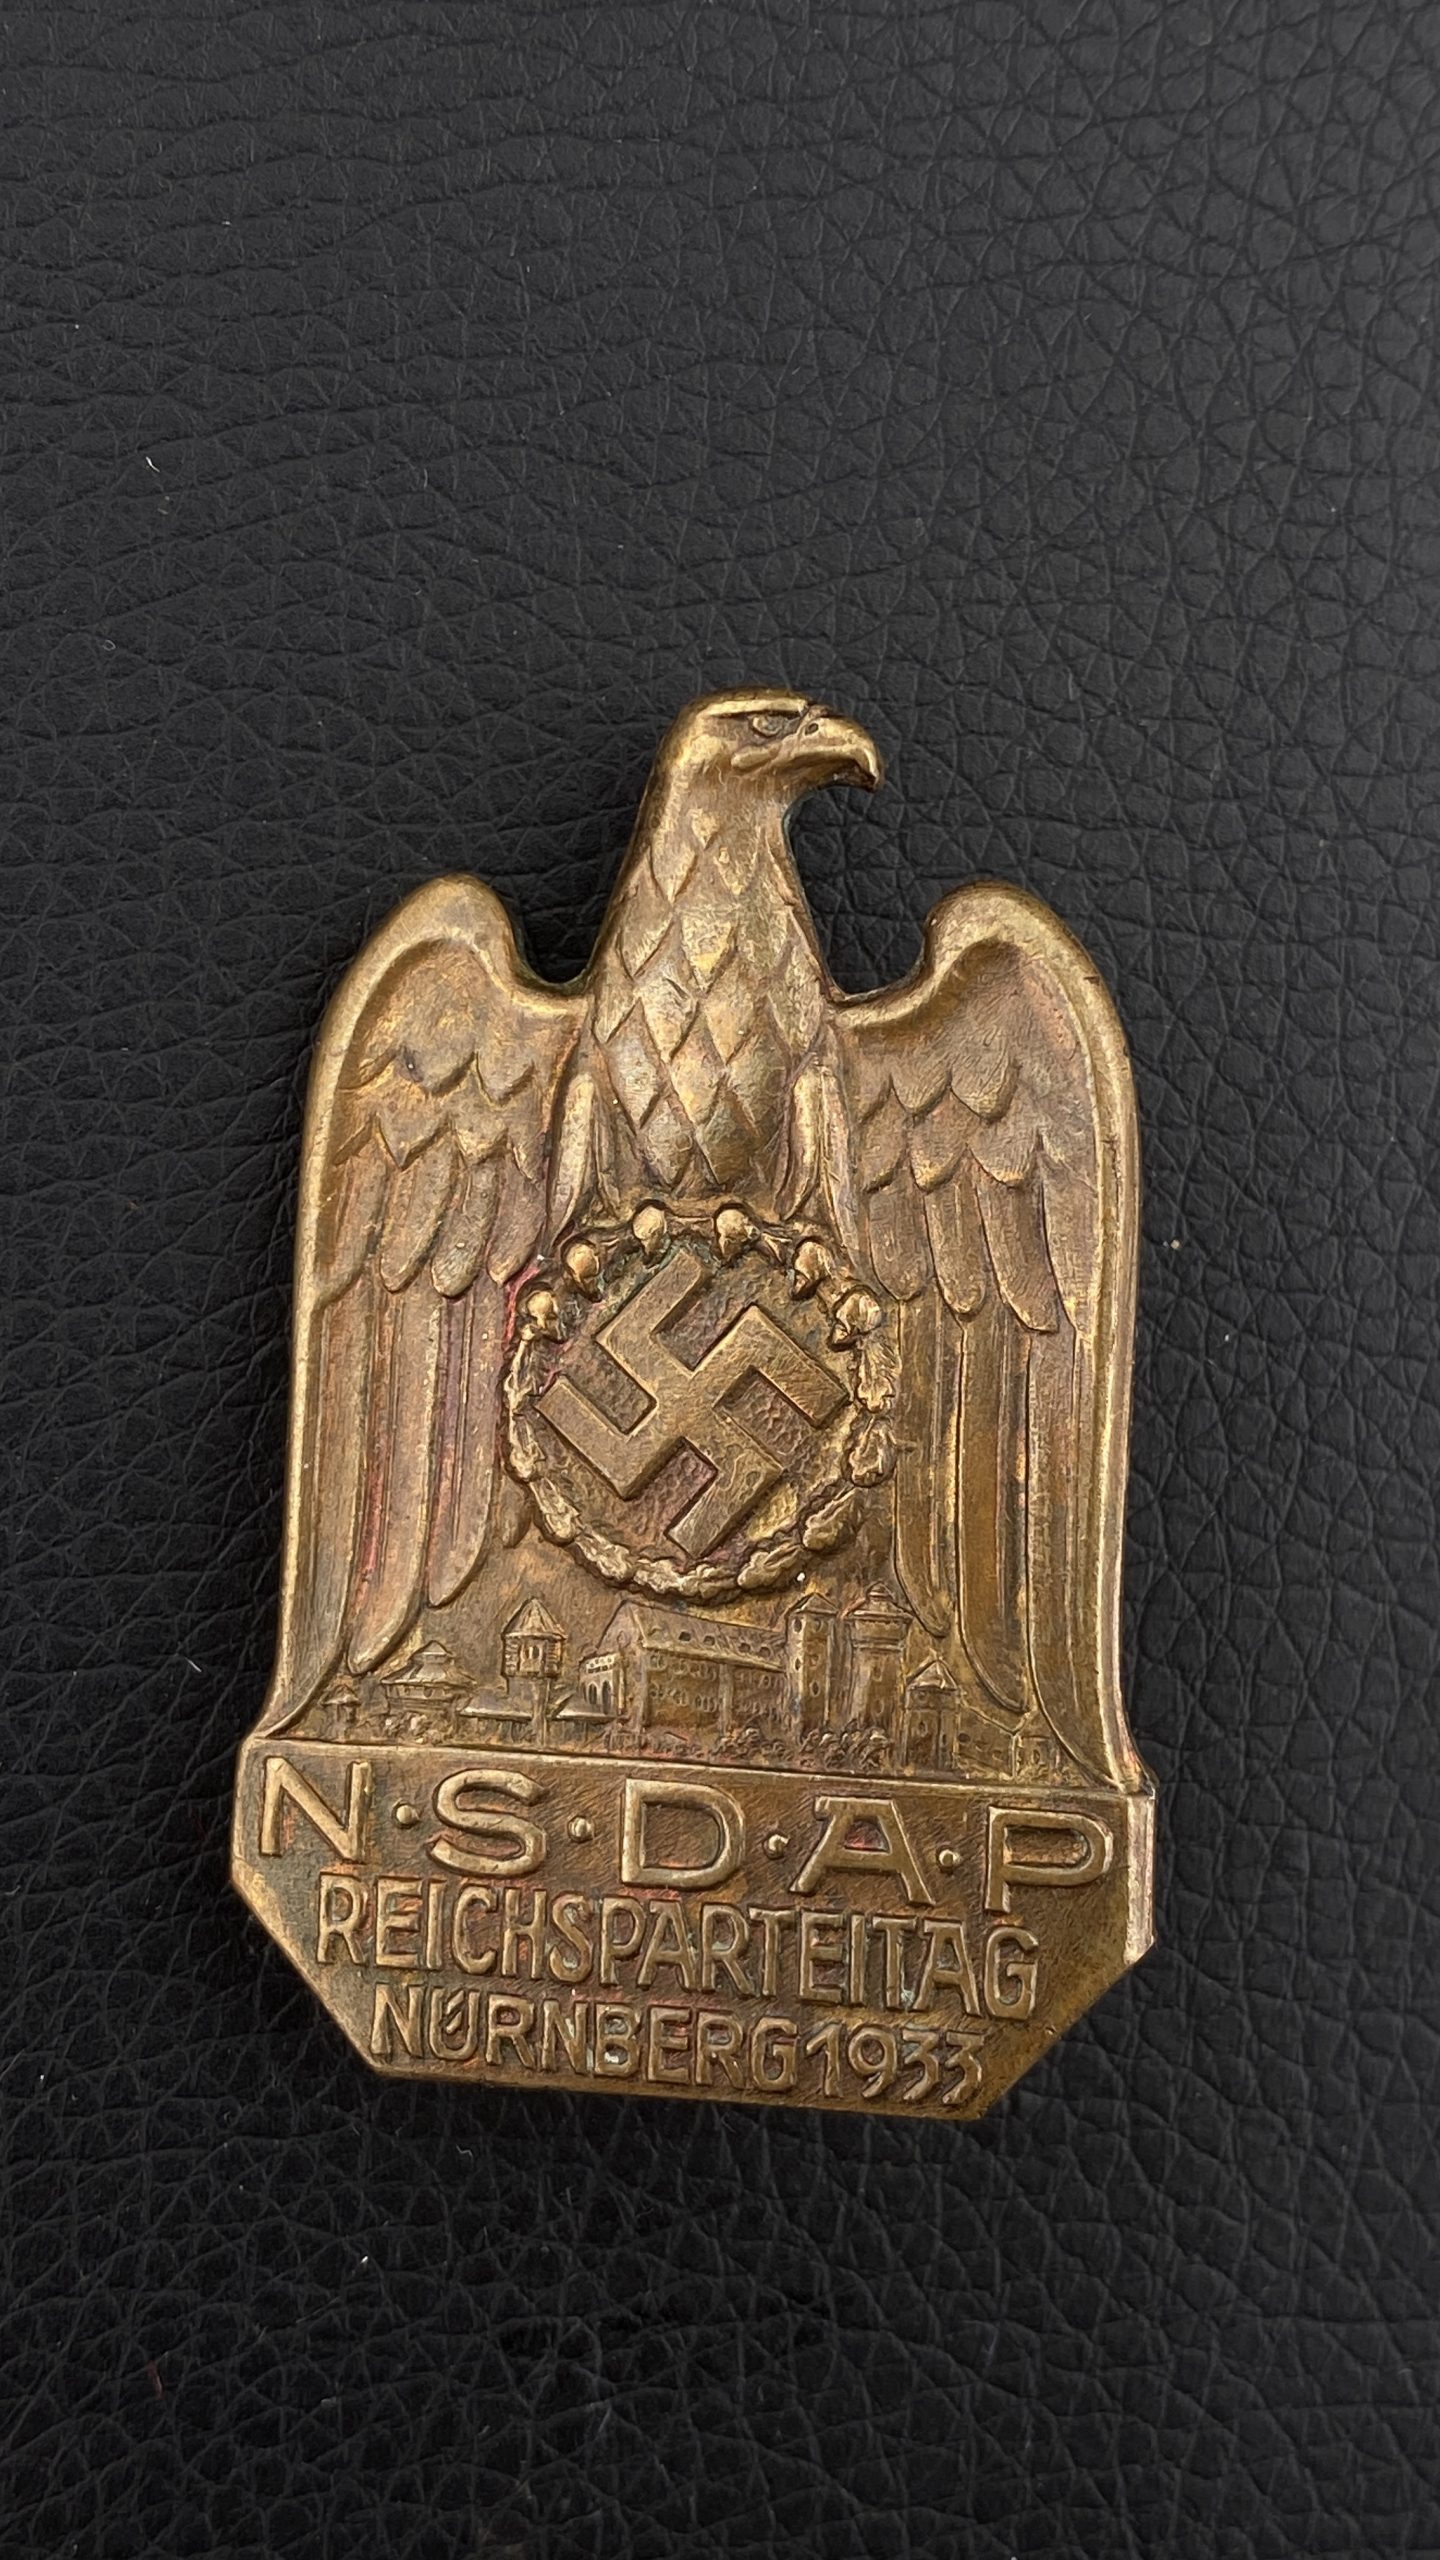 Знак, посвященный V съезду НСДАП (Reichsparteitag NSDAP) в Нюрнберге в 1933 г.